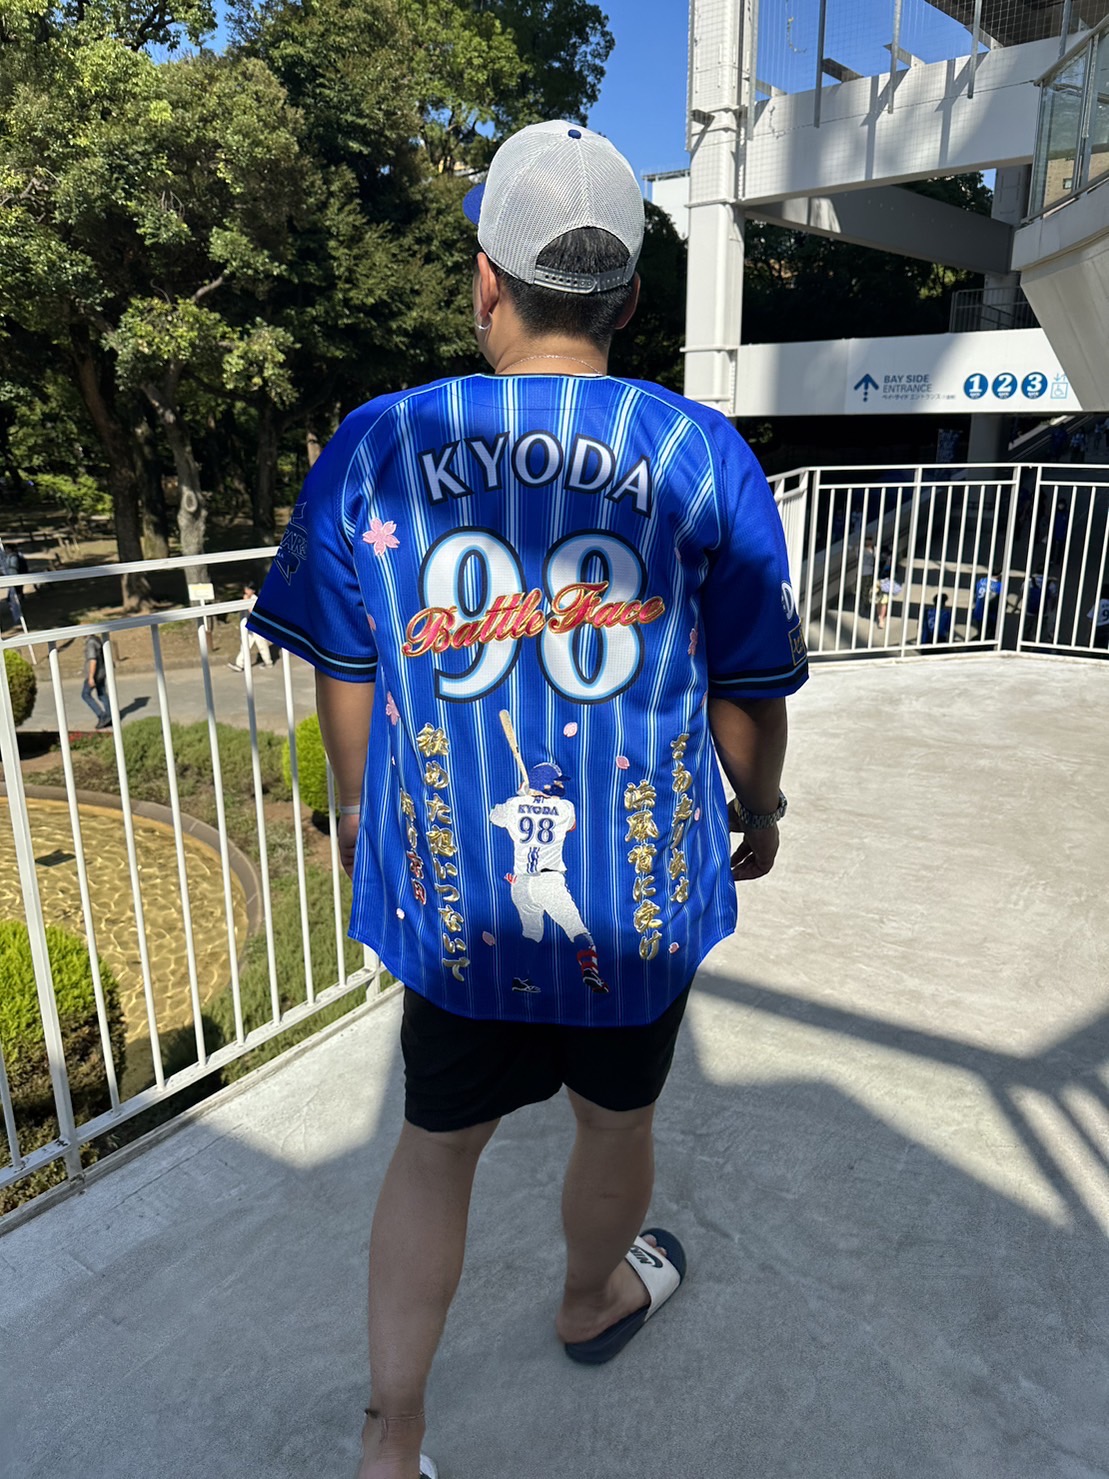 横浜DeNAベイスターズのユニフォームへの刺繍「京田陽太選手 